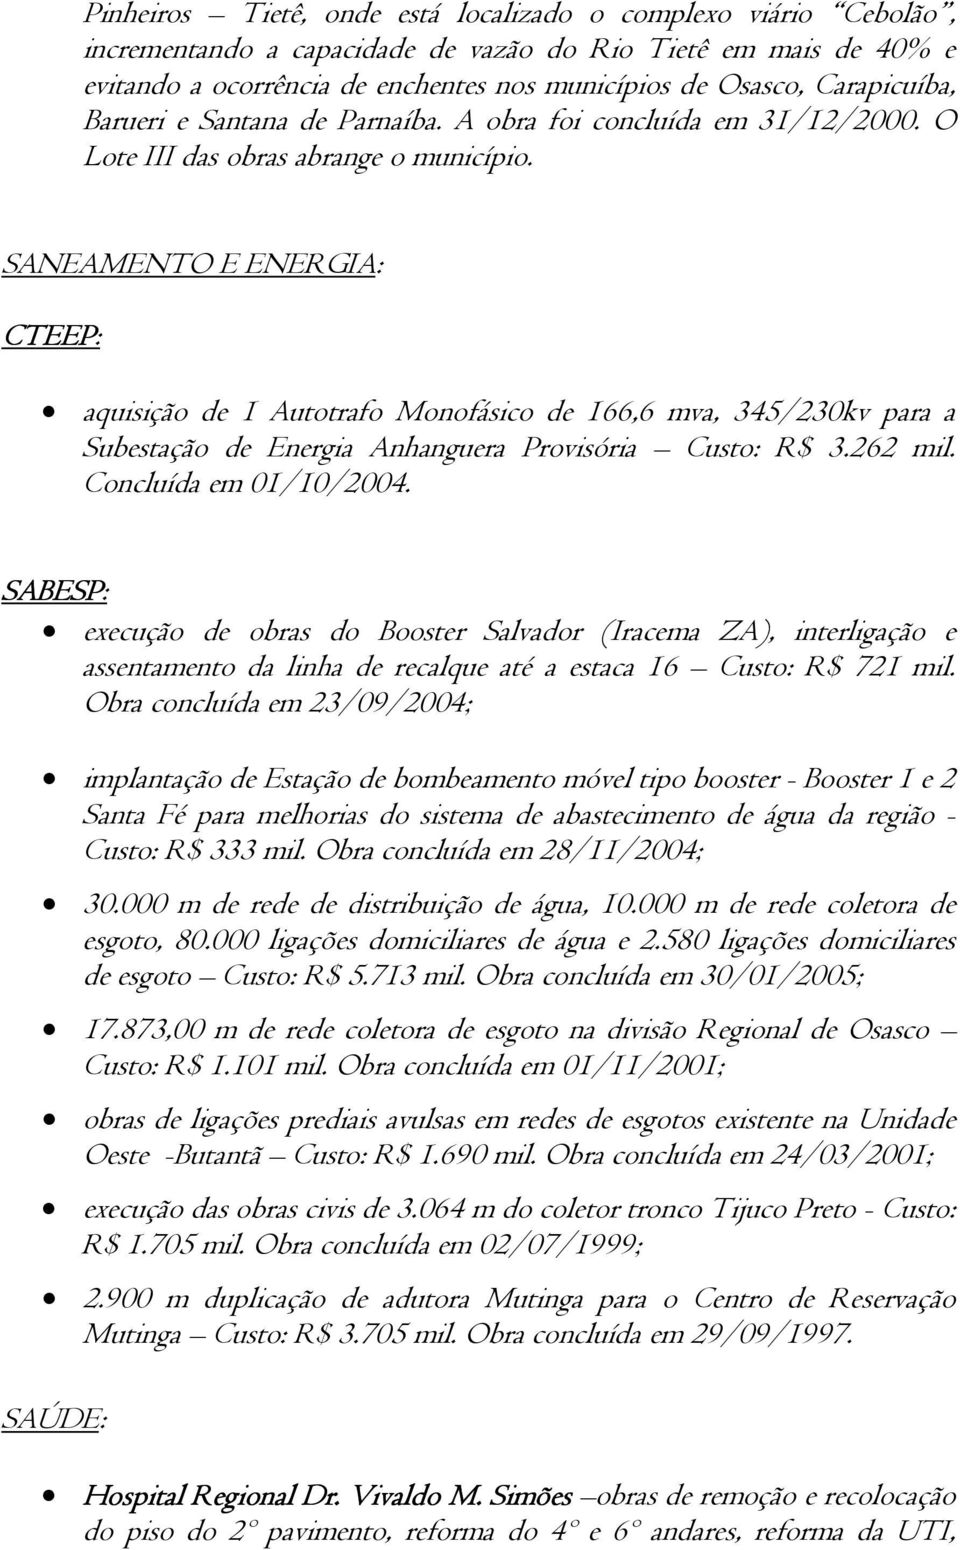 SANEAMENTO E ENERGIA: CTEEP: aquisição de 1 Autotrafo Monofásico de 166,6 mva, 345/230kv para a Subestação de Energia Anhanguera Provisória Custo: R$ 3.262 mil. Concluída em 01/10/2004.